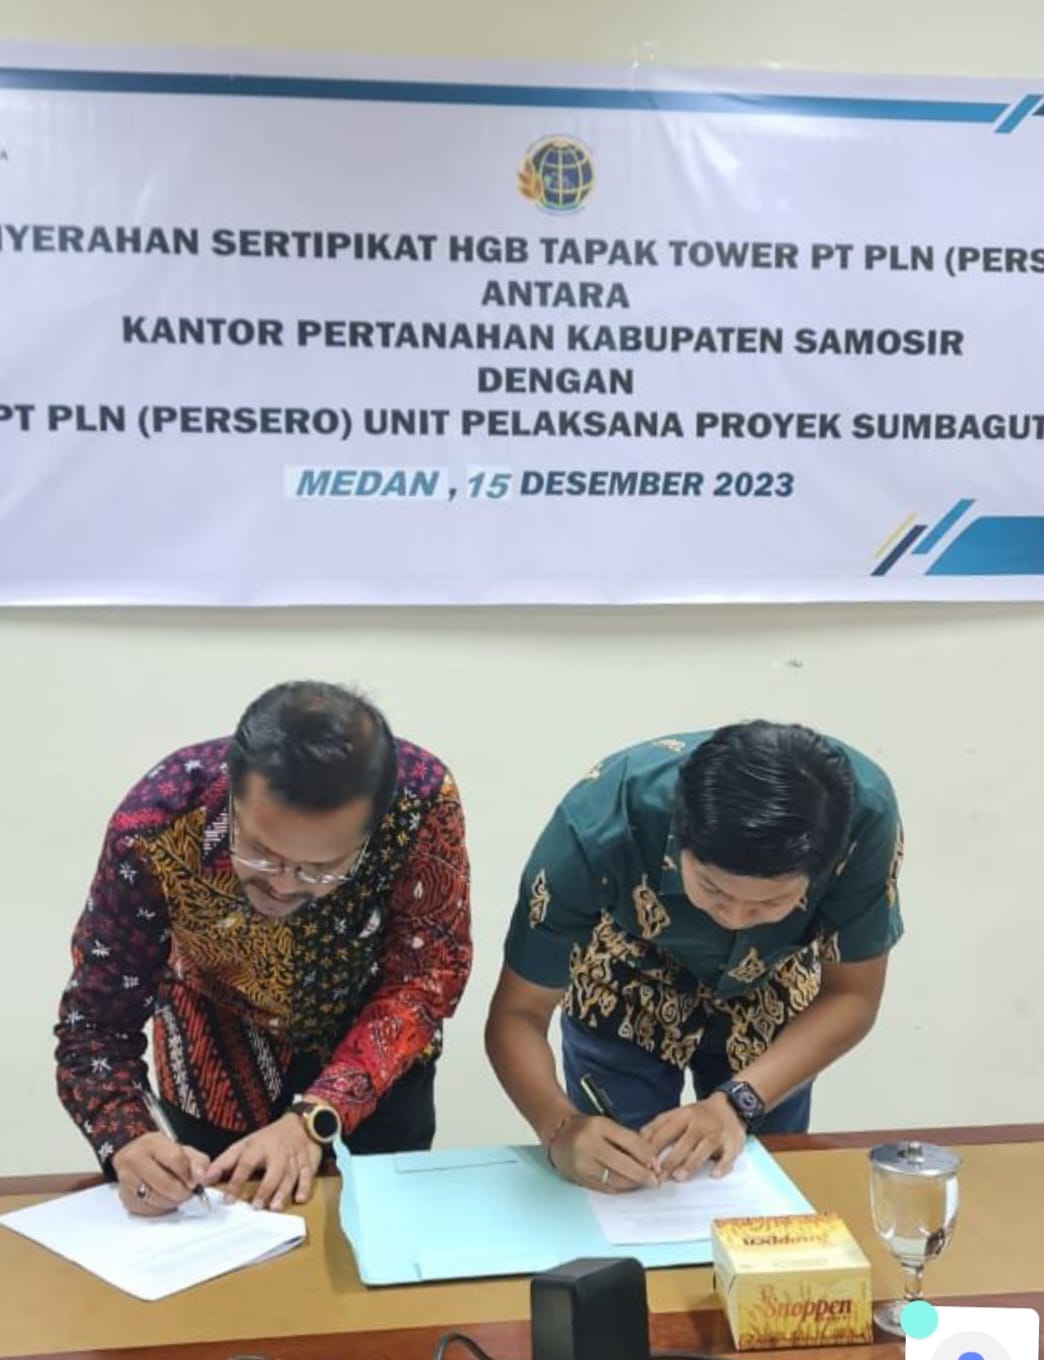 Kantah Samosir tandatangani berkas penyerahan 18 Seripikat HGB Tapak Tower Kepada PLN UPP SBU 3.